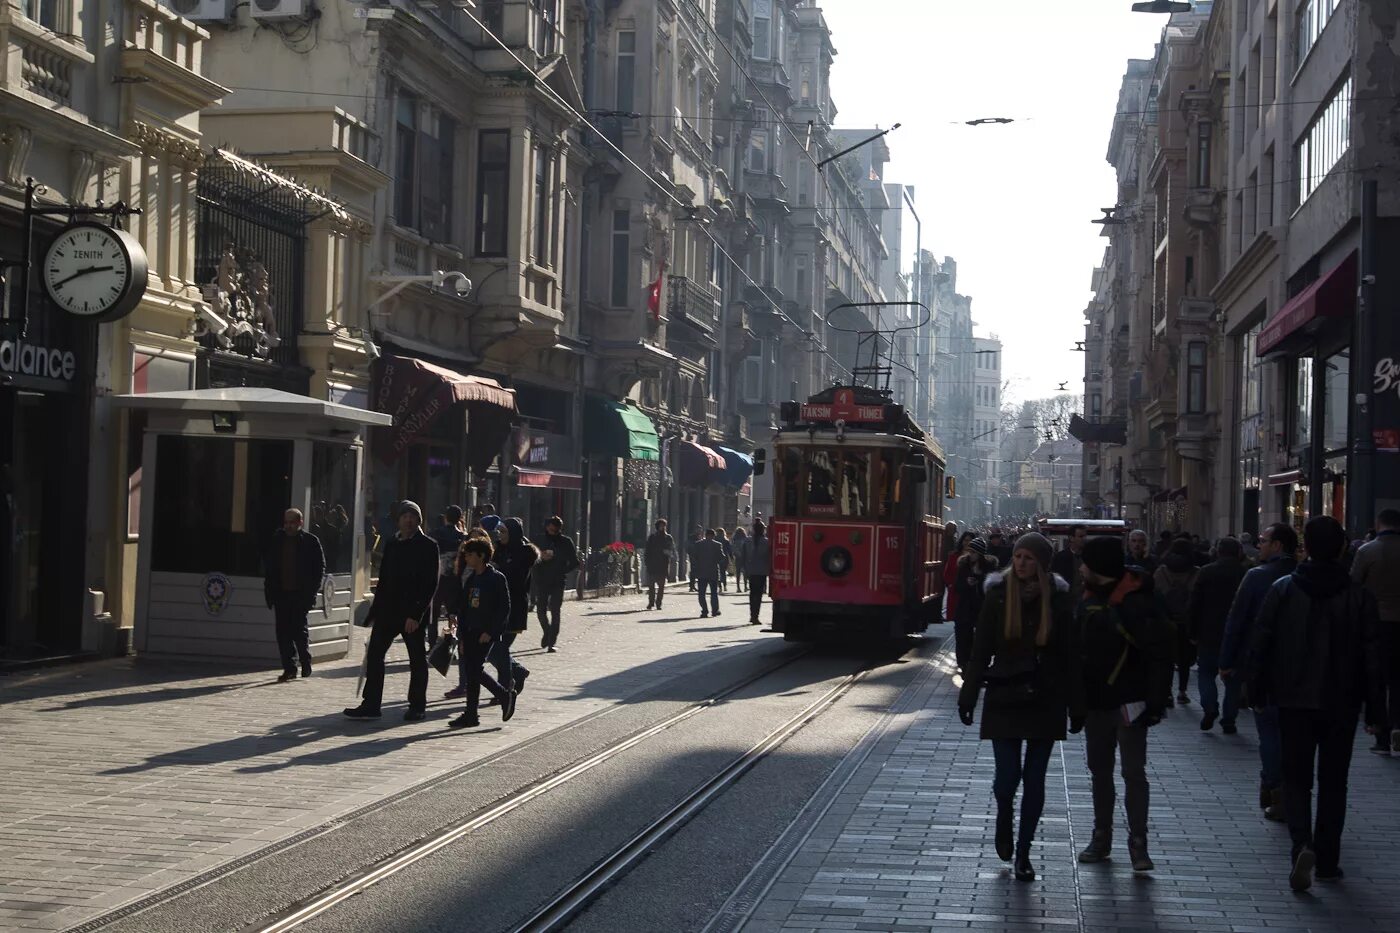 Истикляль. Турция улица Истикляль. Площадь Таксим и улица Истикляль. Истикляль достопримечательности. Улица Таксим в Стамбуле.